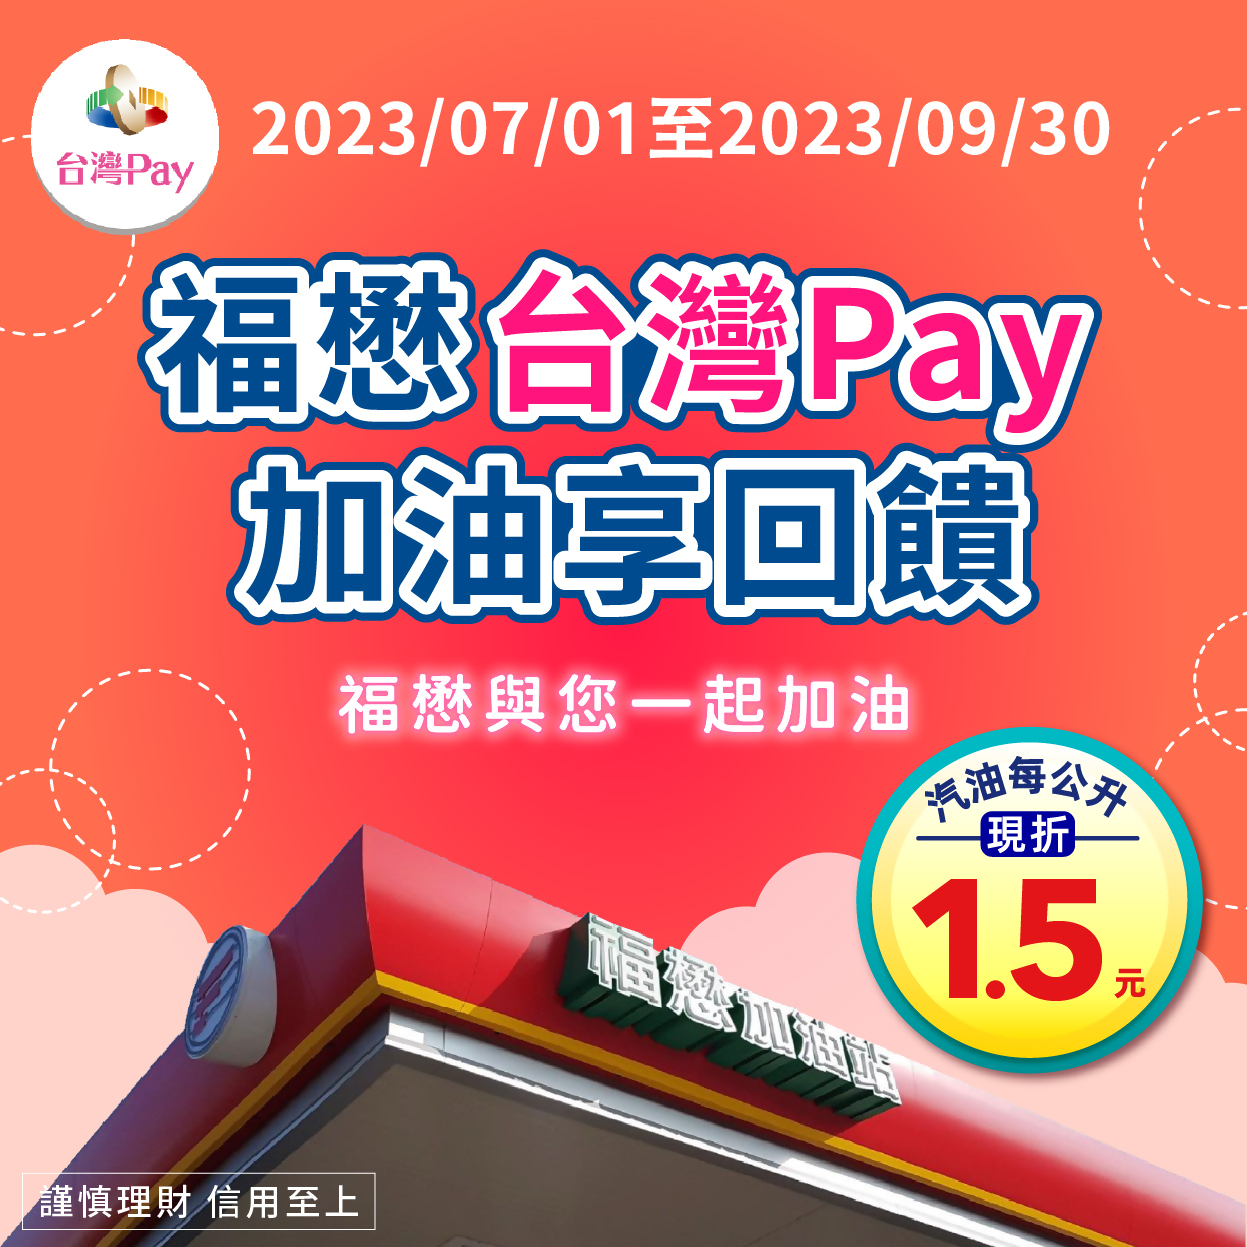 用戶於活動期間內至活動地點進行人工加油服務，並出示「台灣Pay」付款條碼進行支付，單筆消費汽油1公升以上，即享有每公升現折新臺幣1.5元優惠。